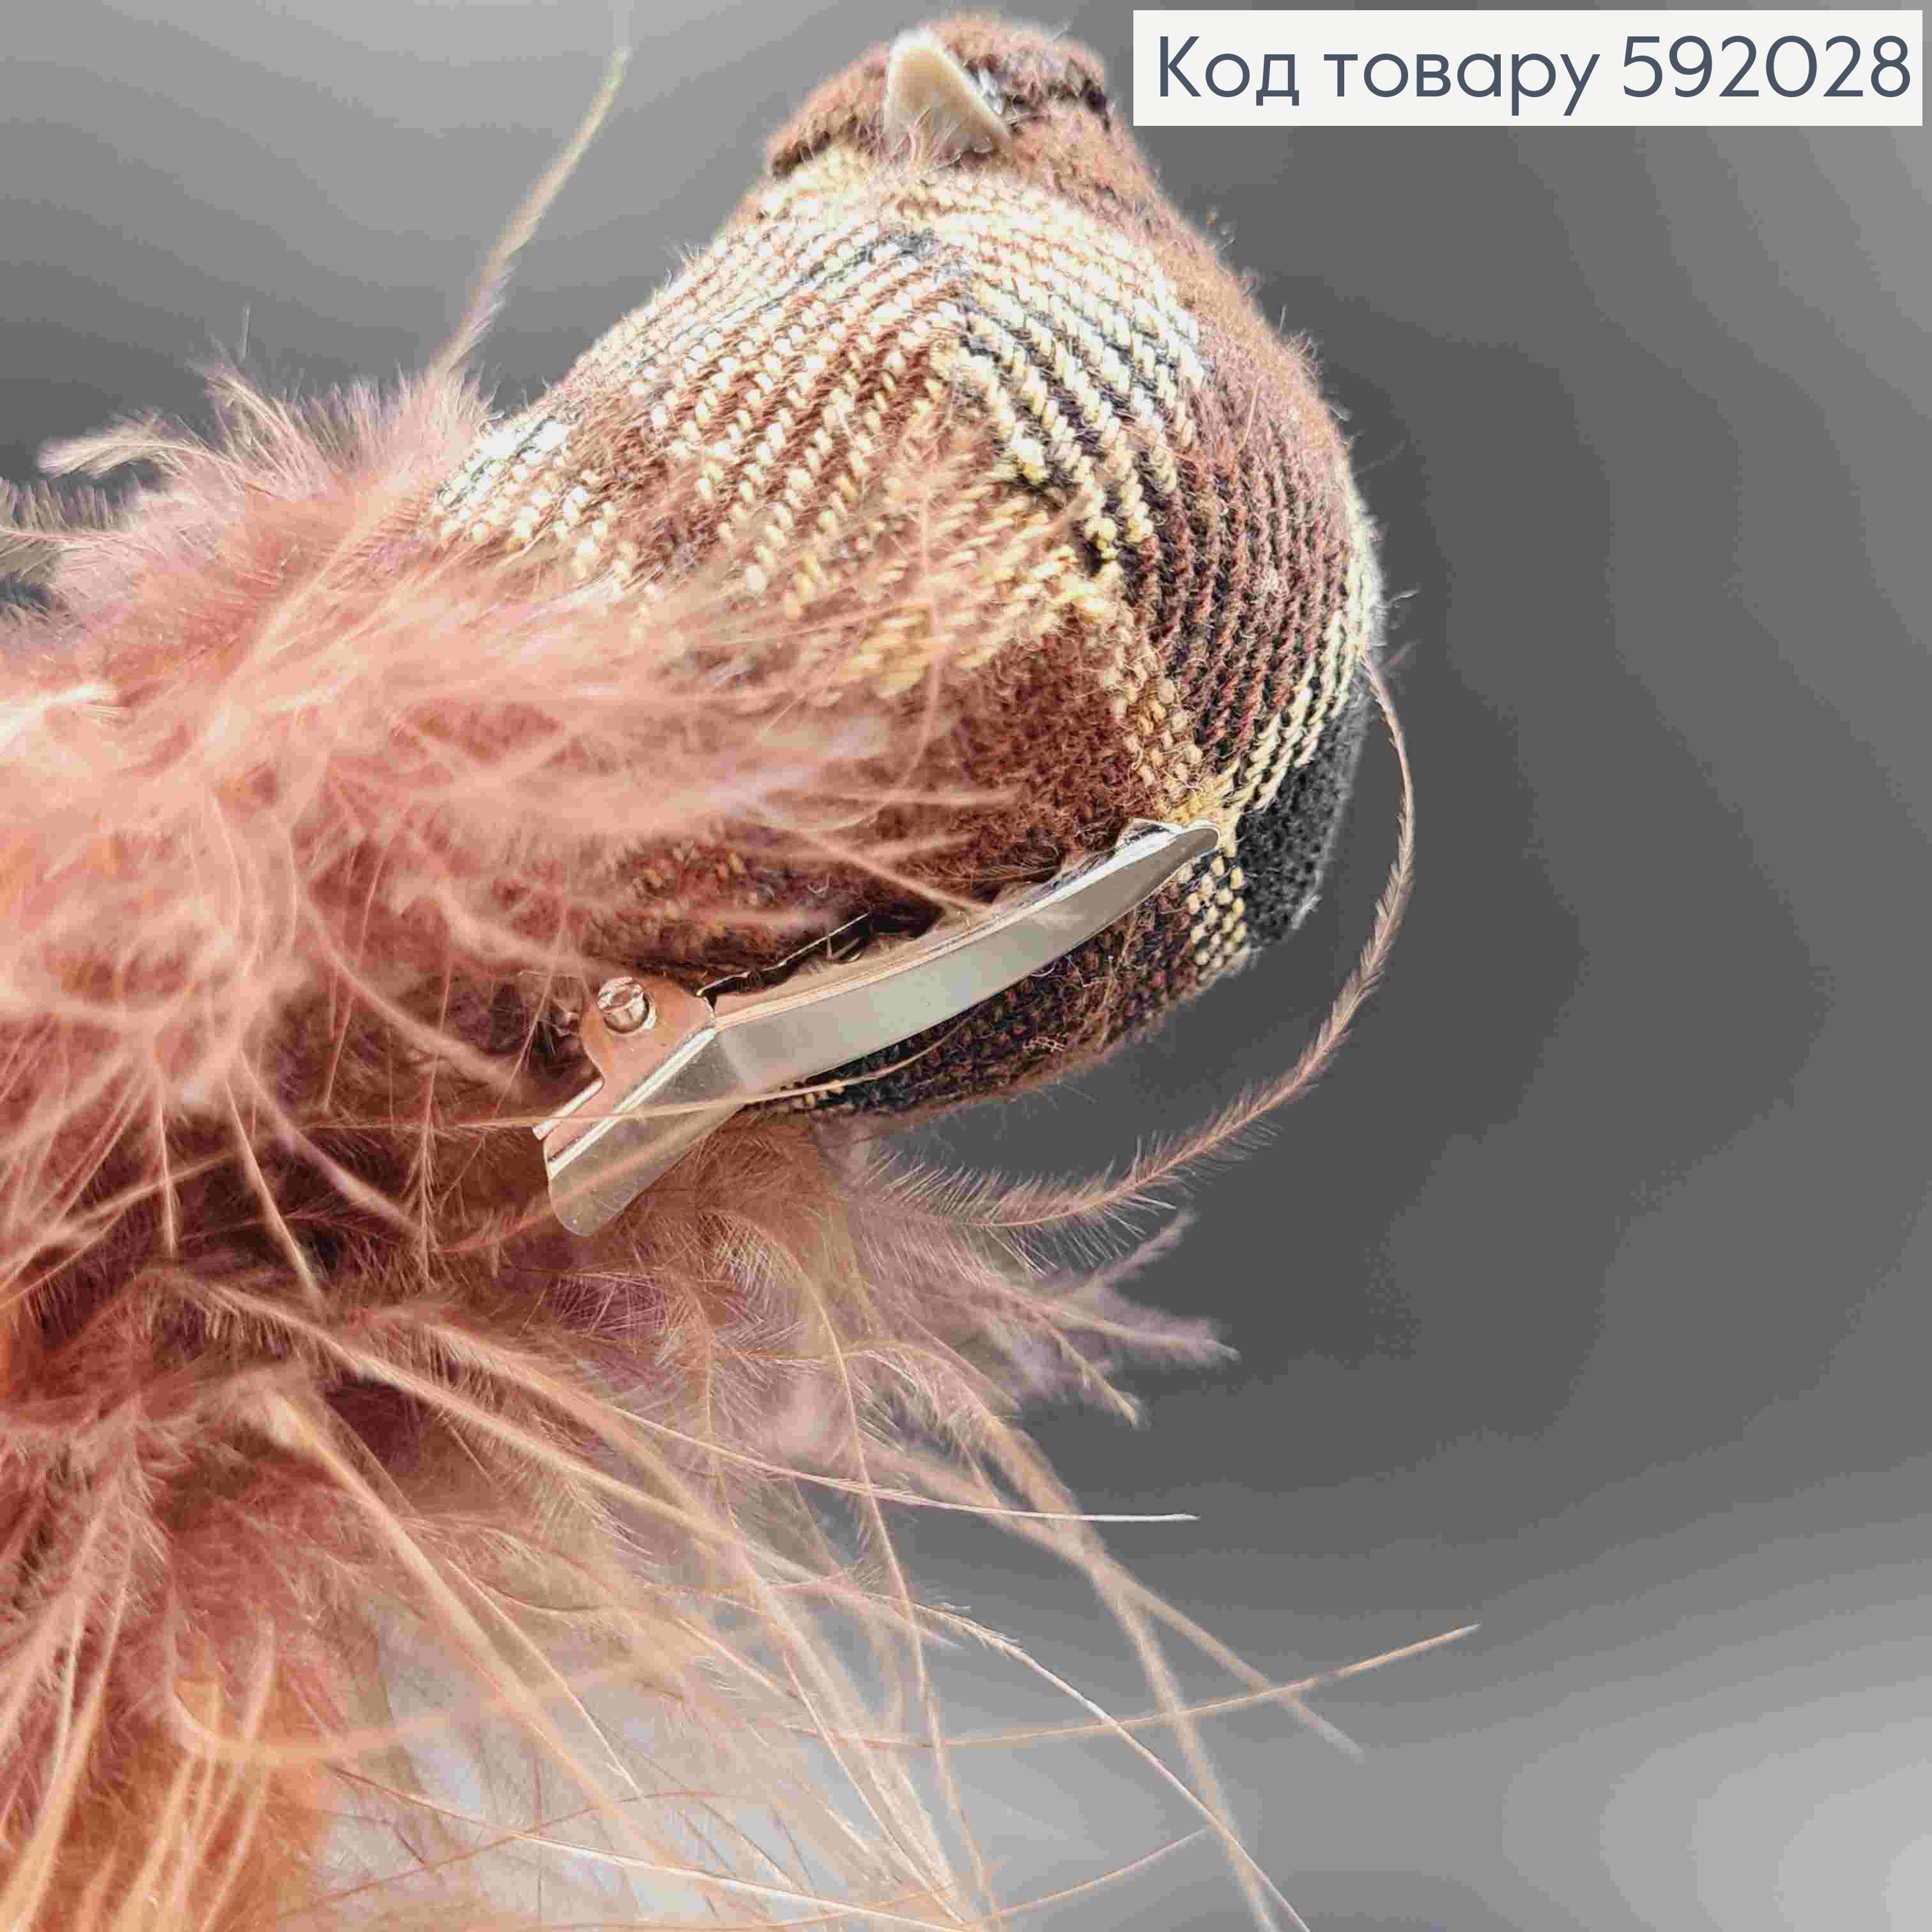 Флористична заколка, 13см, ГОРОБЧИК з тканини в клітинку, з хвостиком з пір'ячка, Польща 592028 фото 2